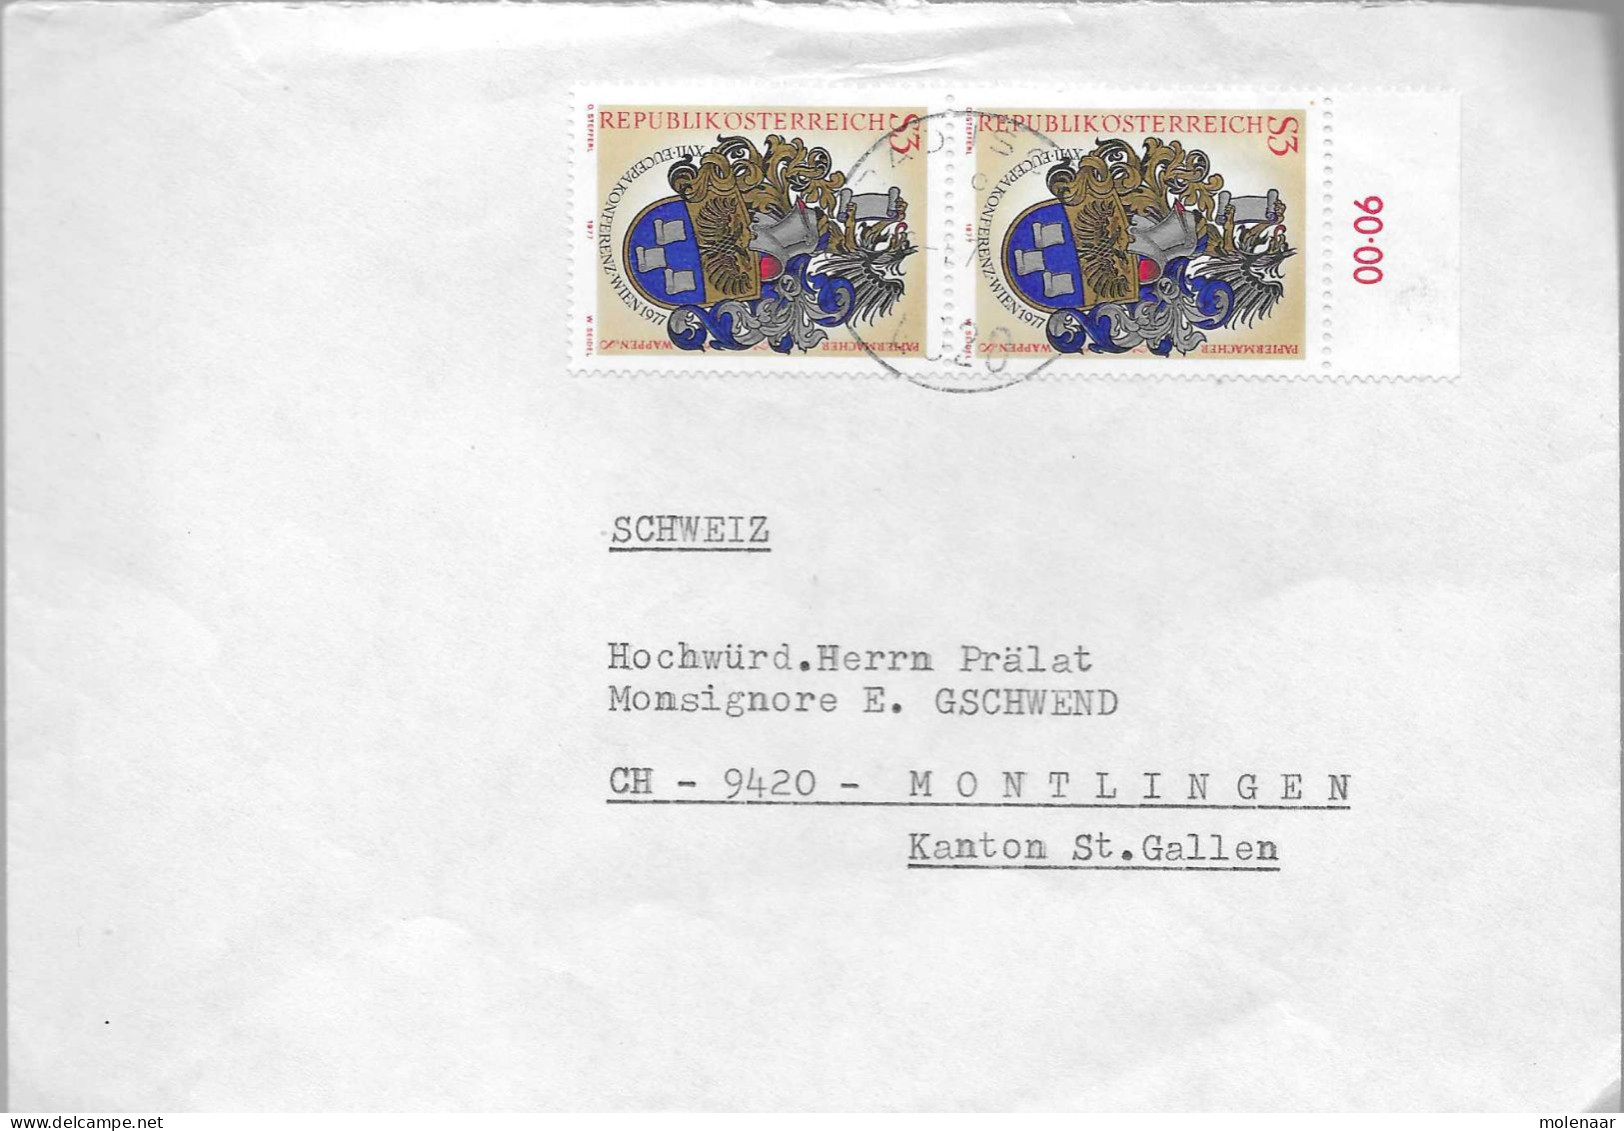 Postzegels > Europa > Oostenrijk > 1945-.... 2de Republiek > 1971-1980 > Brief Met 2x No. 1601 (17739) - Ungebraucht